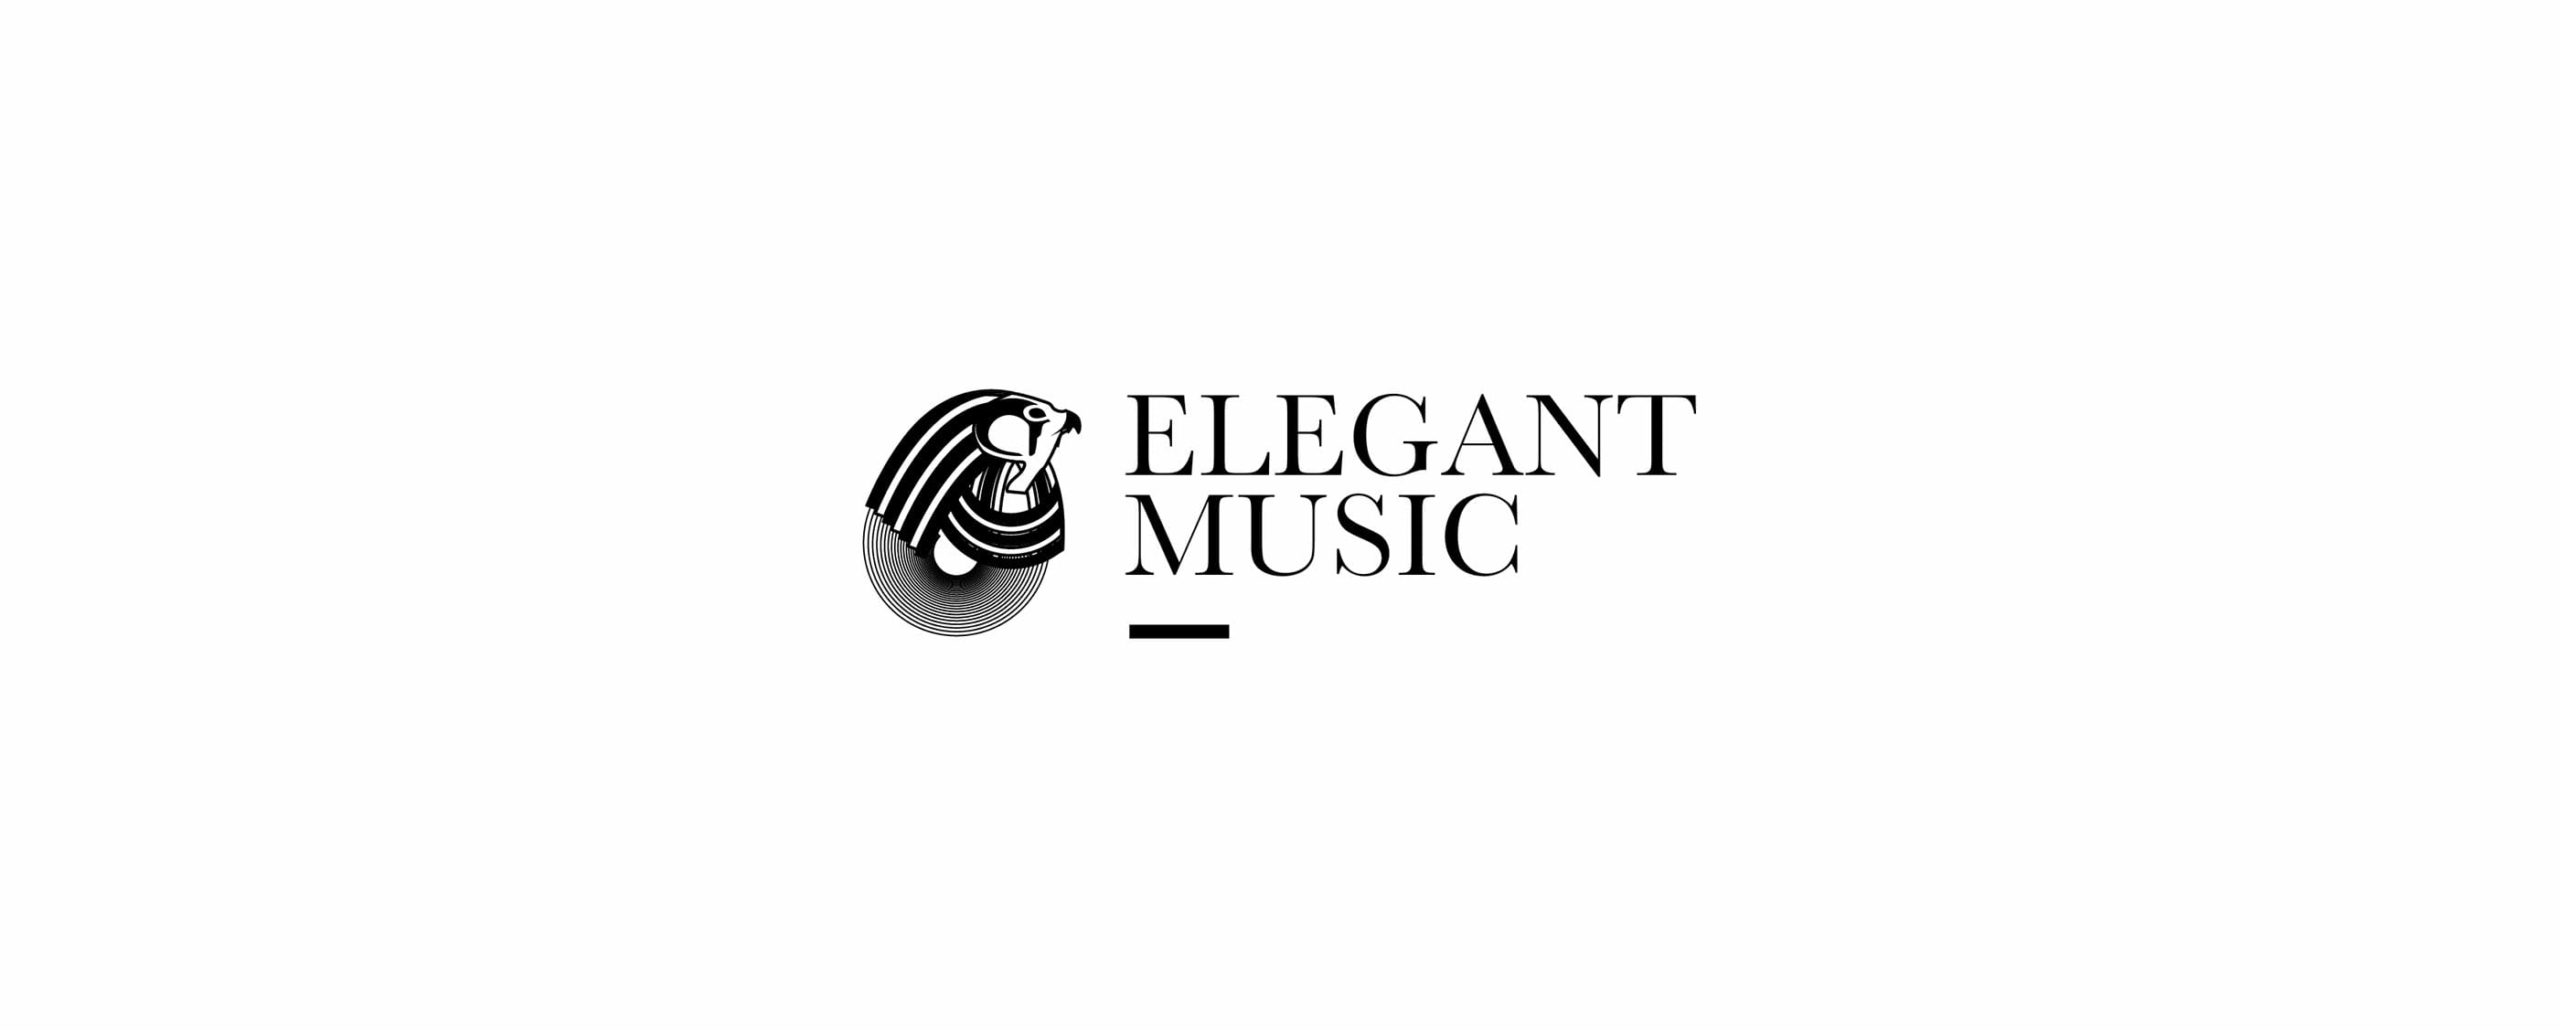 Elegant Music logo concept